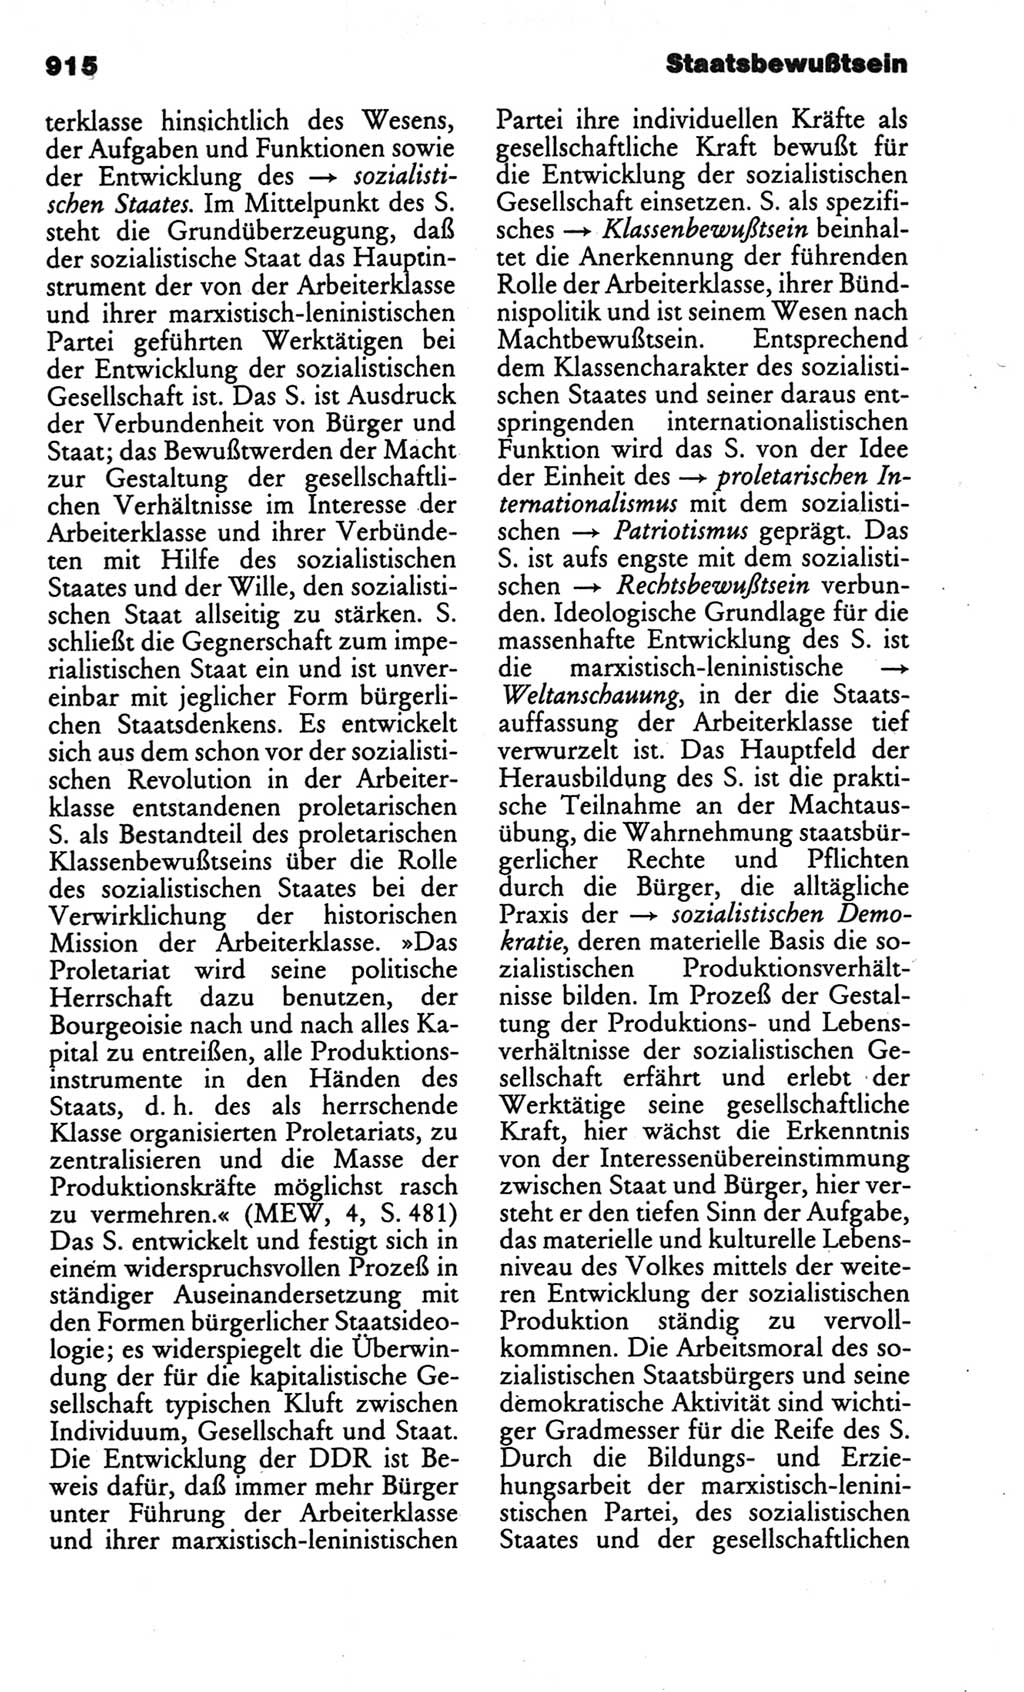 Kleines politisches Wörterbuch [Deutsche Demokratische Republik (DDR)] 1986, Seite 915 (Kl. pol. Wb. DDR 1986, S. 915)